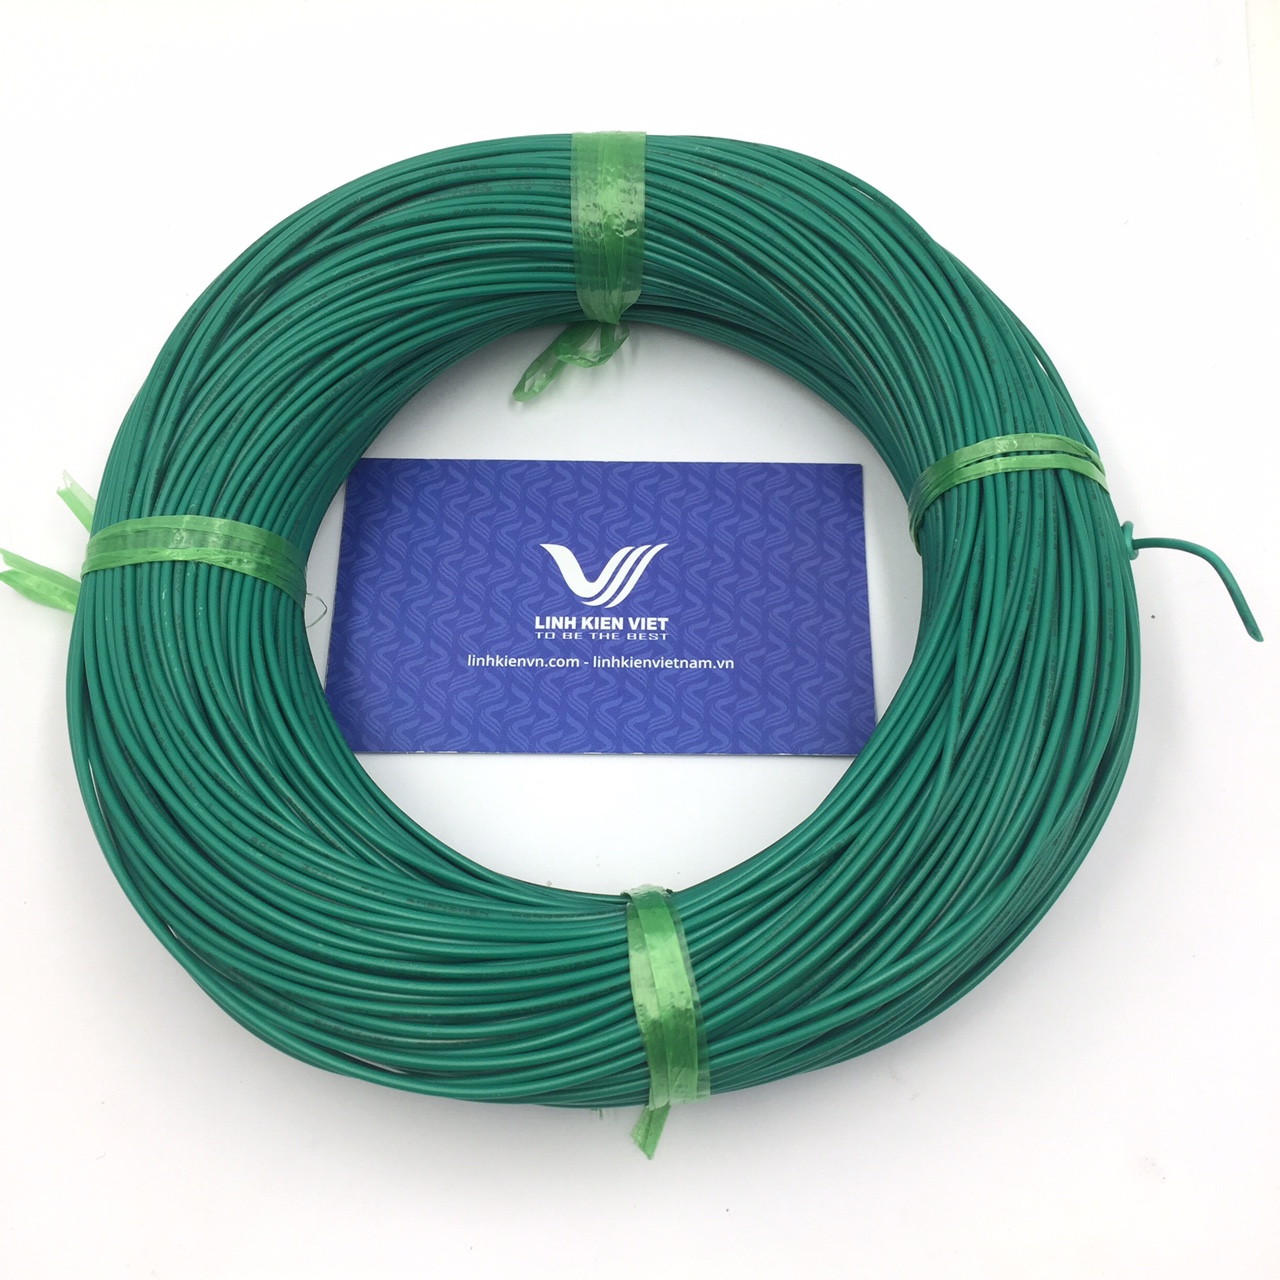 Cuộn dây điện UL1007 22AWG 100m - màu xanh lục